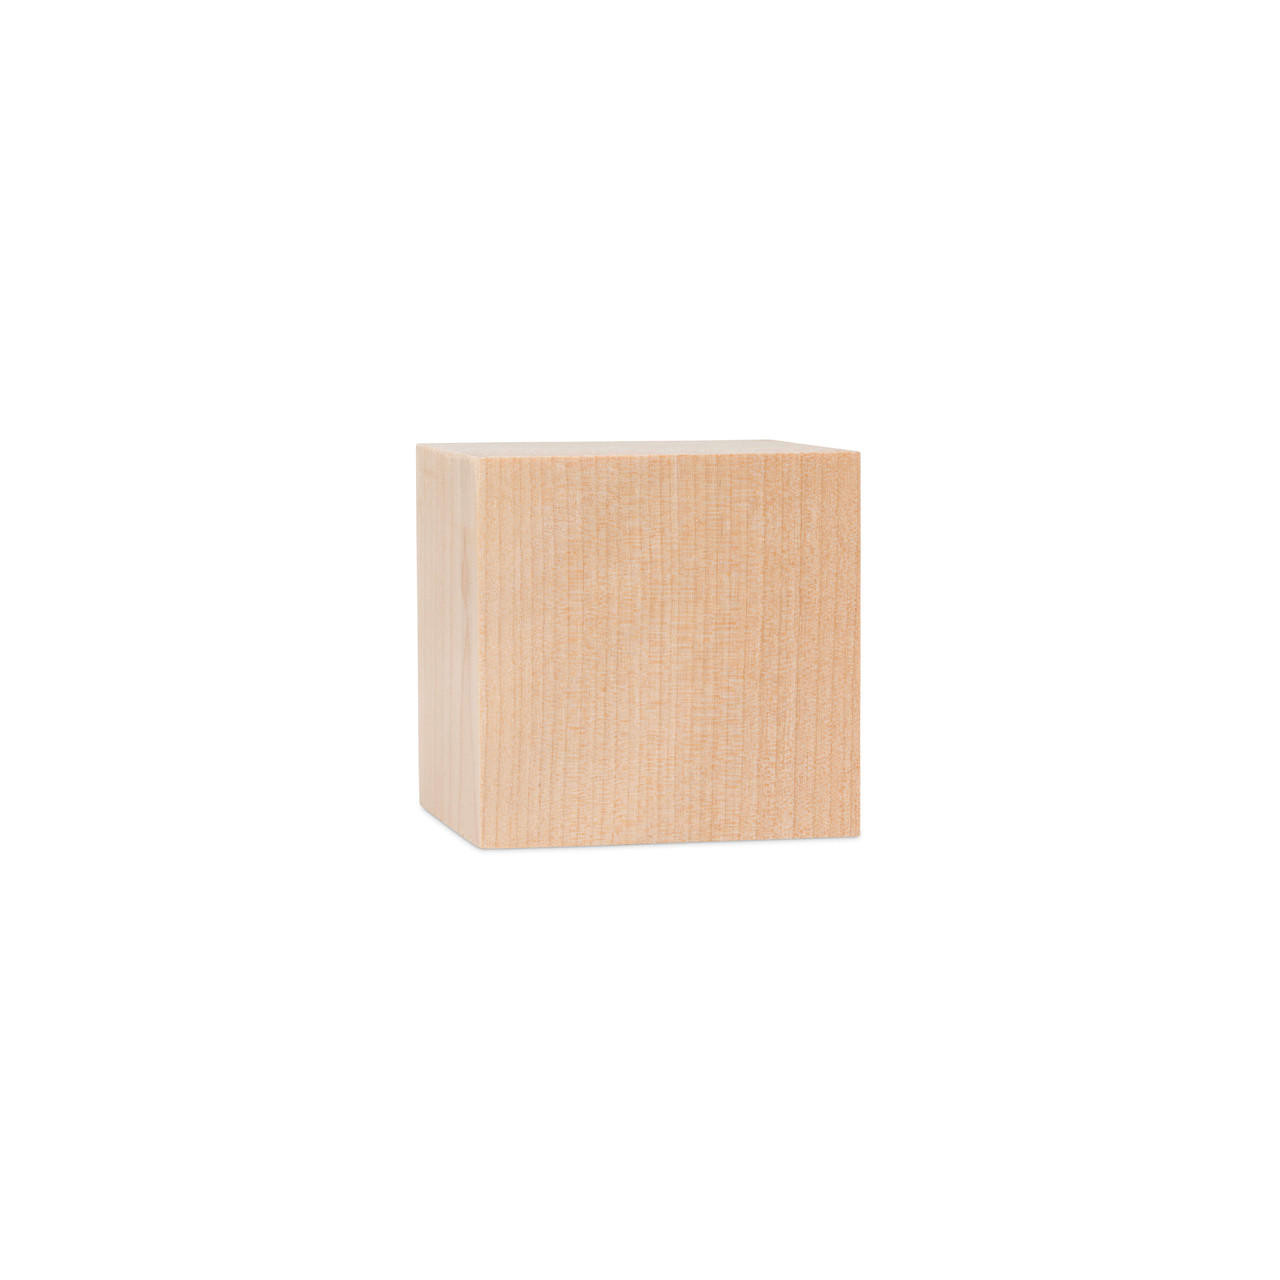 Rectangle Wooden Cubes Blocks Craft Supplies Blocks Wood Cubes